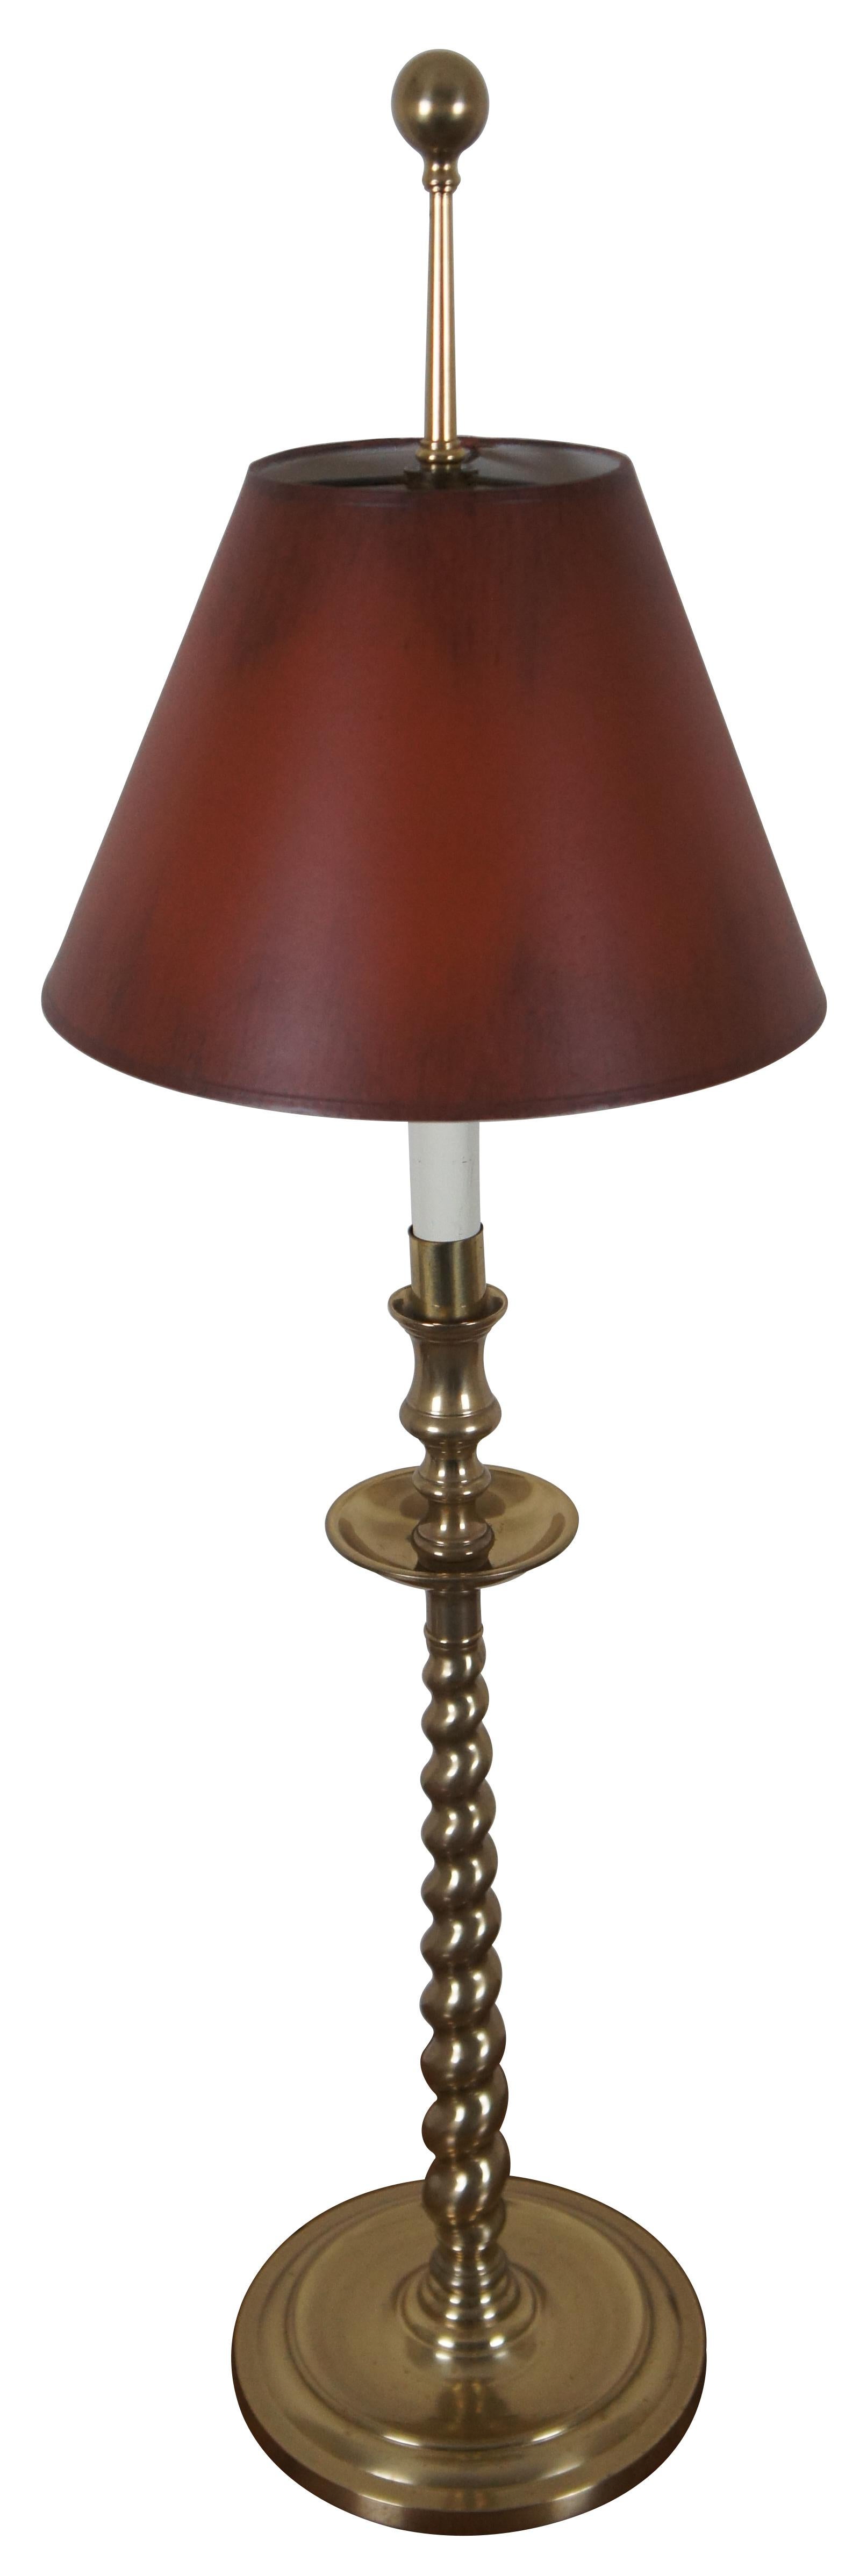 Vintage Frederick Cooper, lampe de table / buffet en forme de chandelier d'autel en laiton torsadé avec abat-jour rouge.

Mesures : 8,25